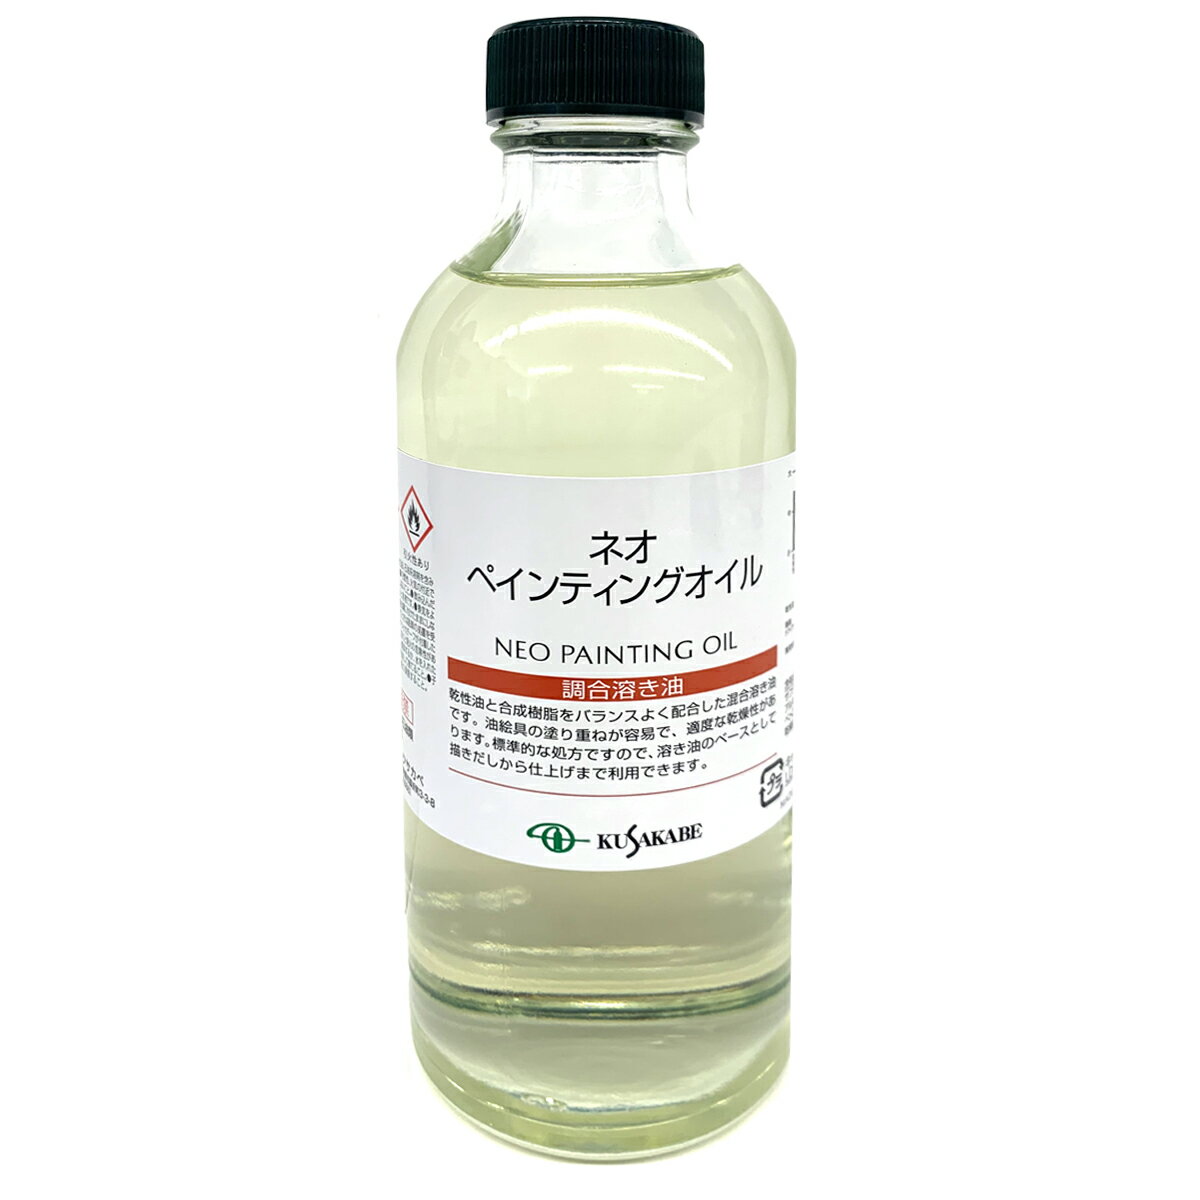 クサカベ ネオペインティングオイル 調合溶き油 250mL kusakabe